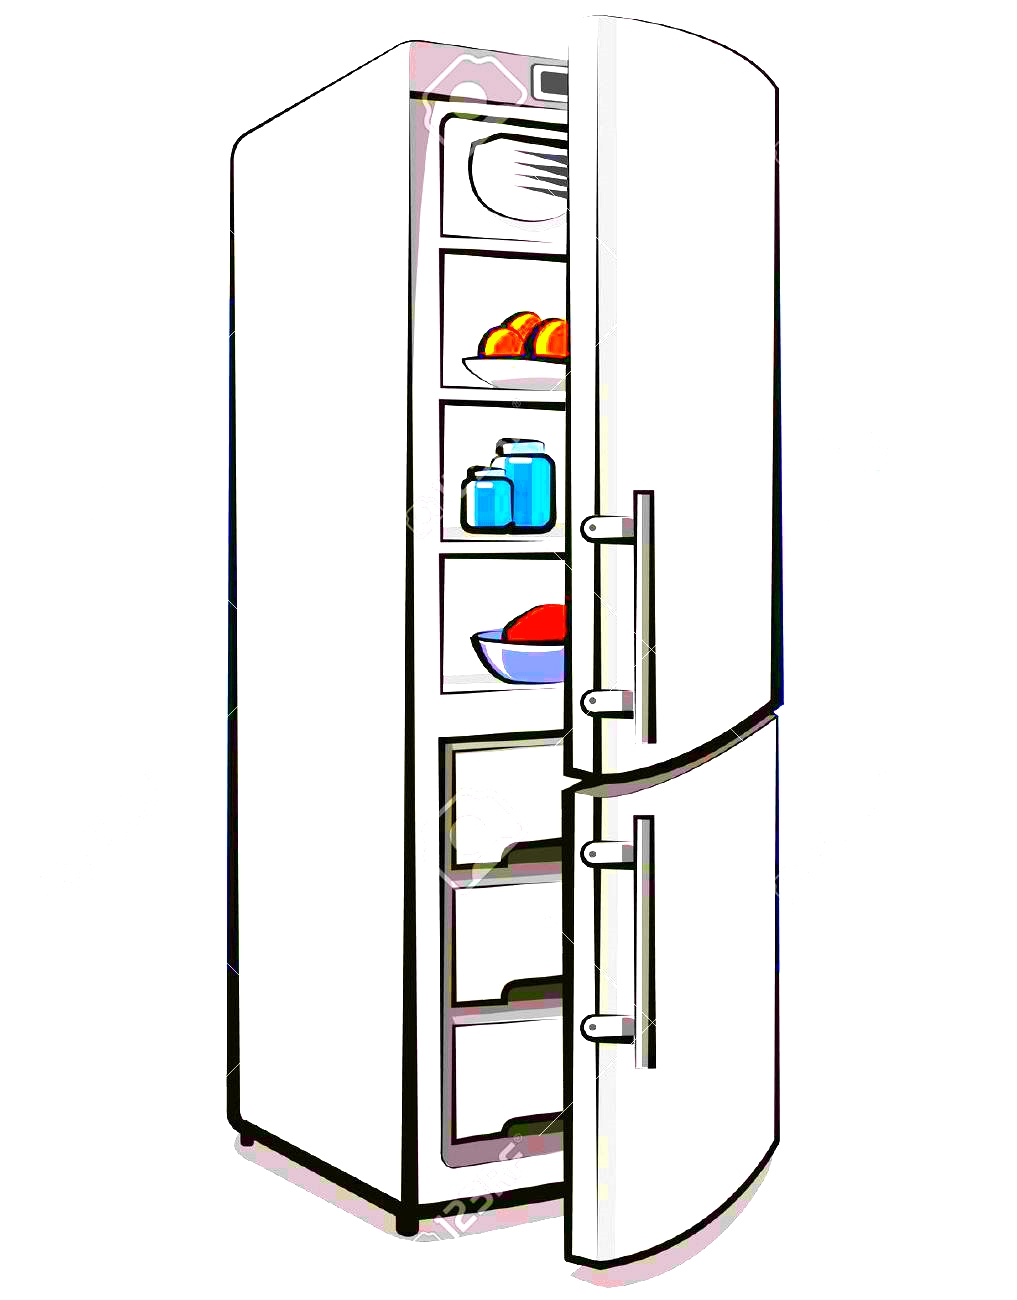 Холодильник рисованный